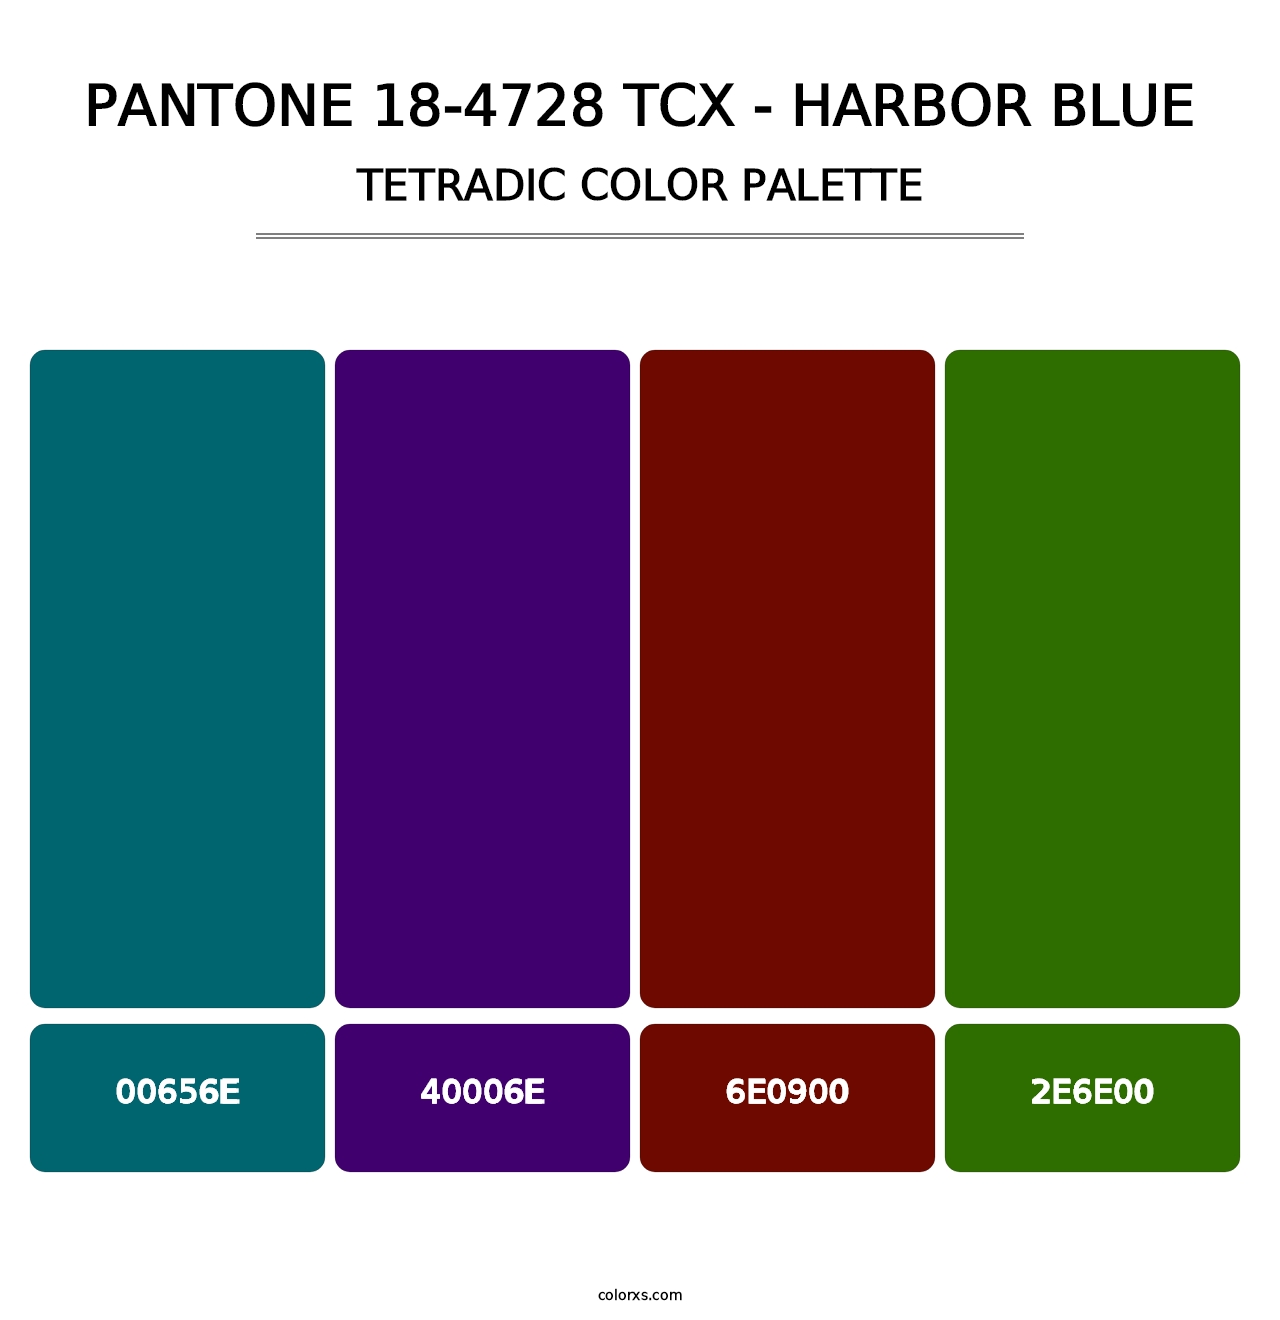 PANTONE 18-4728 TCX - Harbor Blue - Tetradic Color Palette